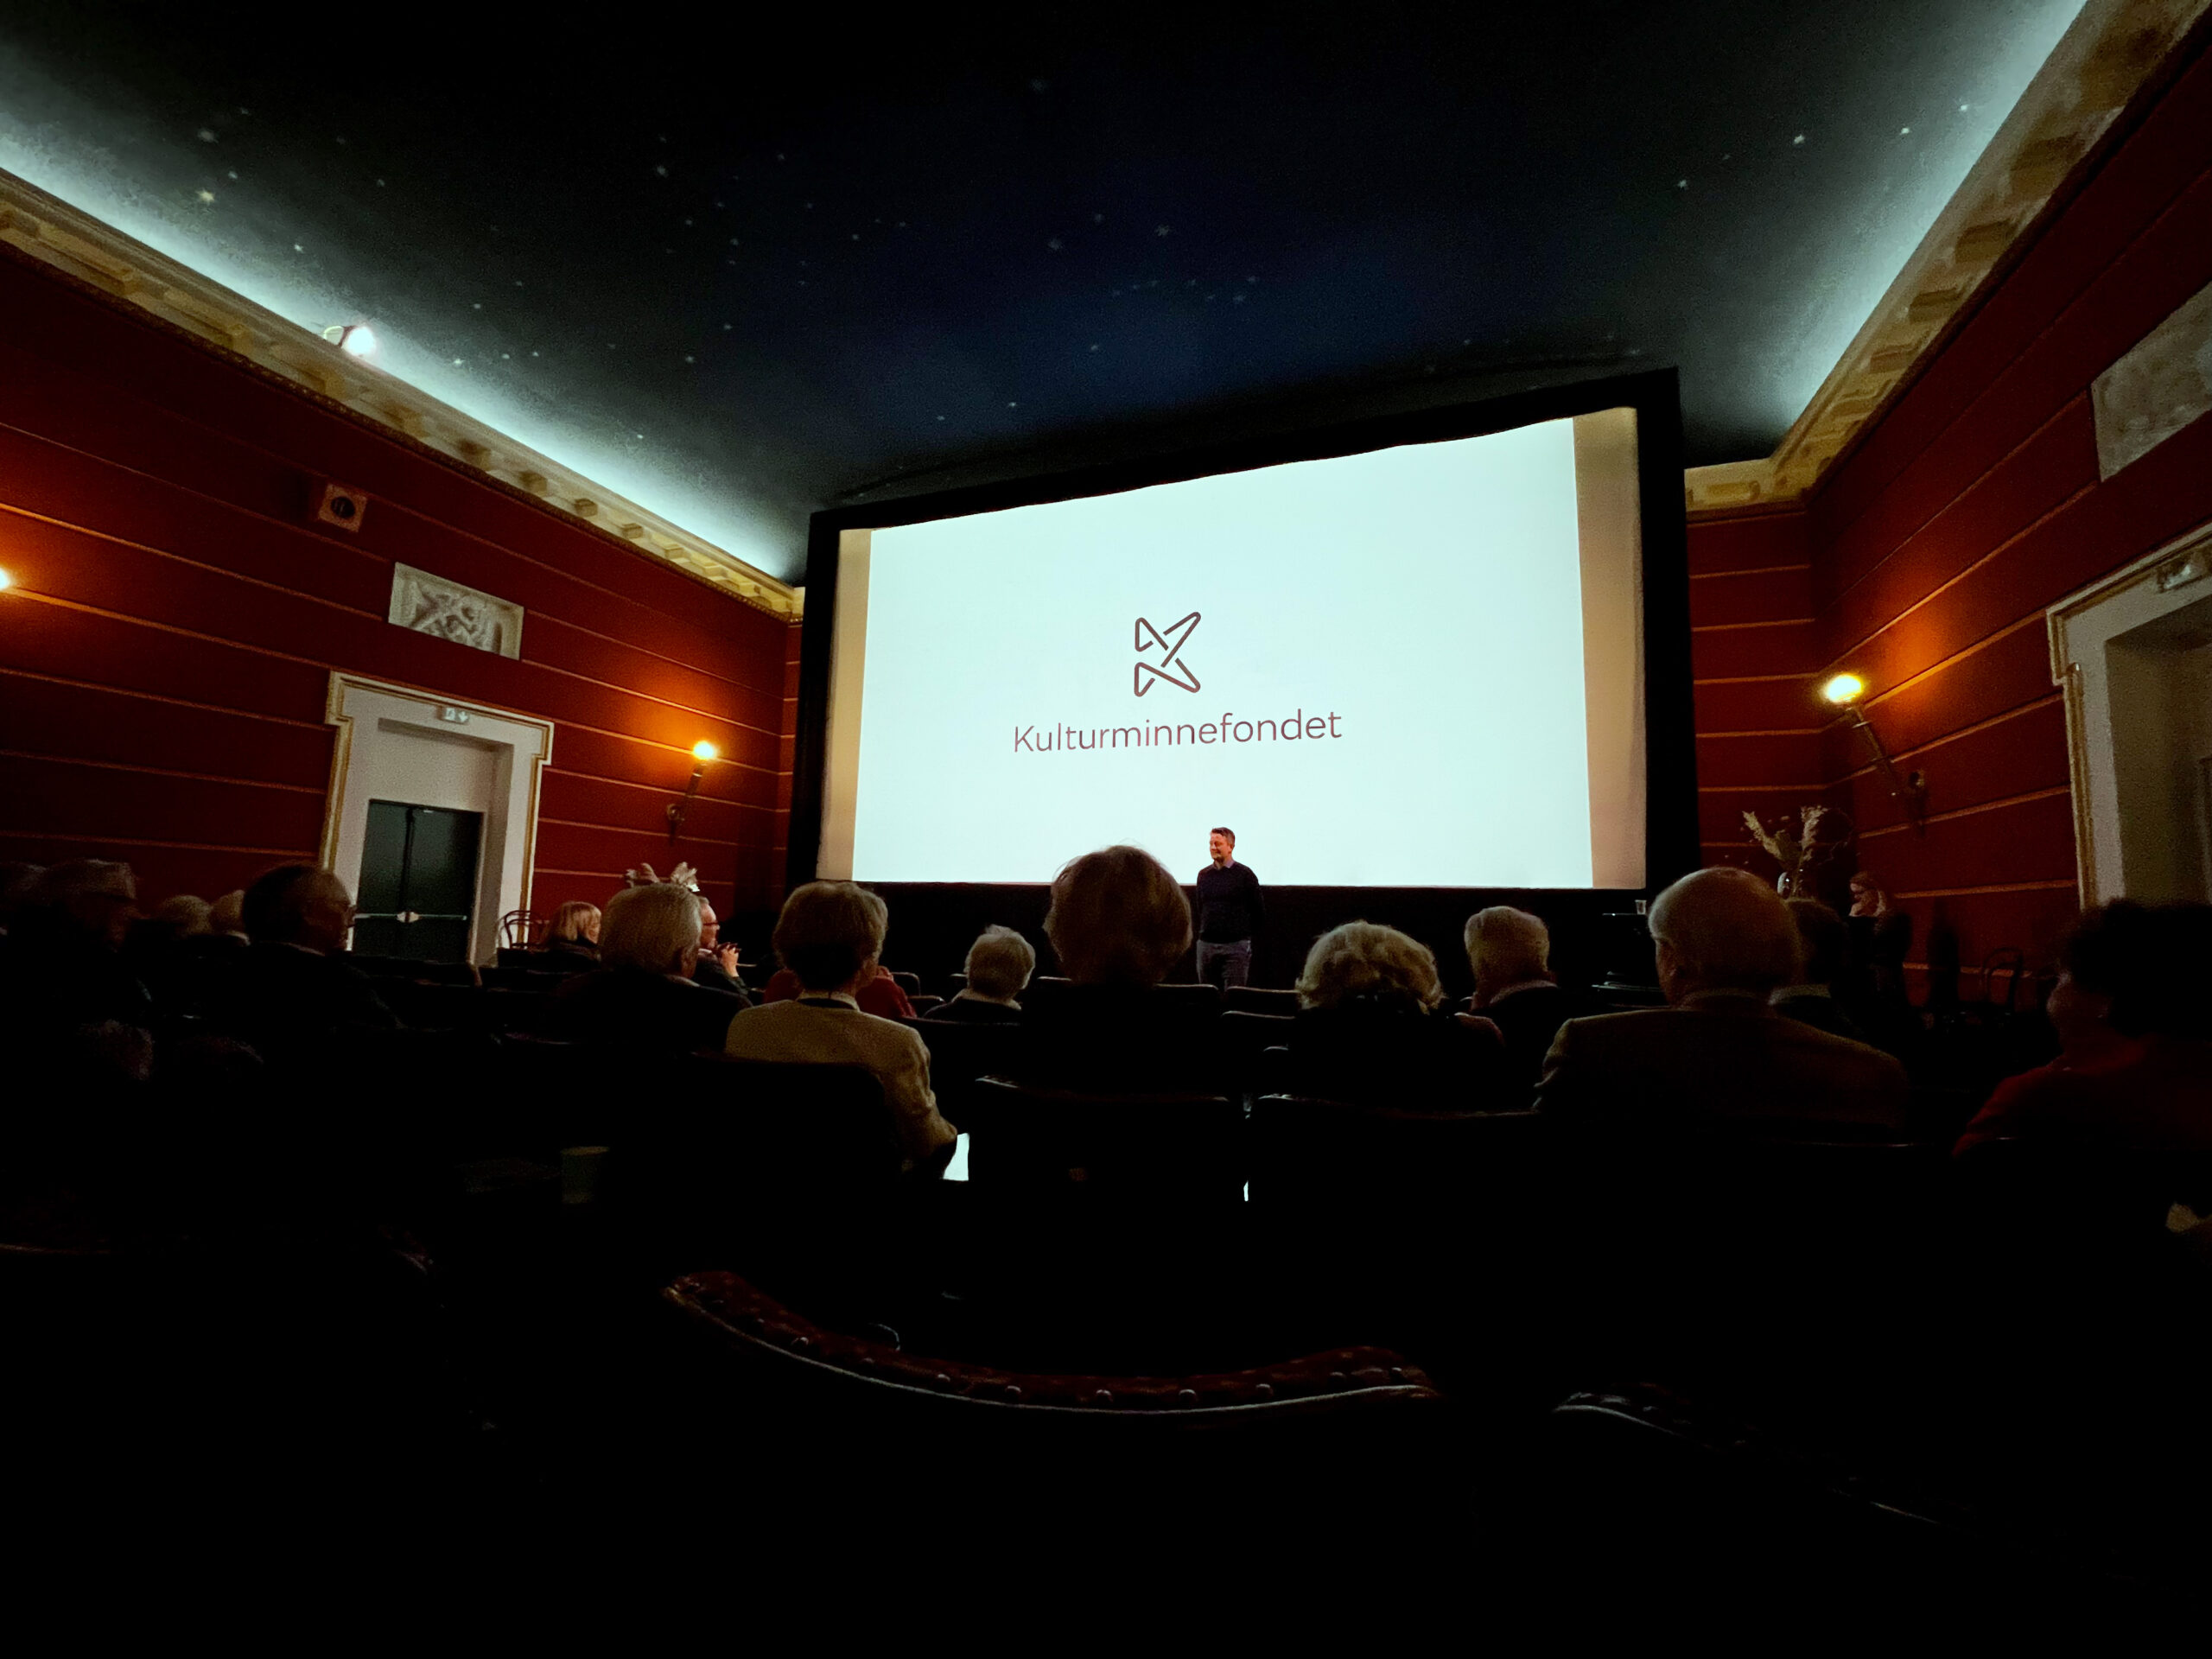 Bilde av unnsiden av kinoen, med publiku. På skjermer er Kulturminnefondets logo og teksten "Kulturminnefondet": 